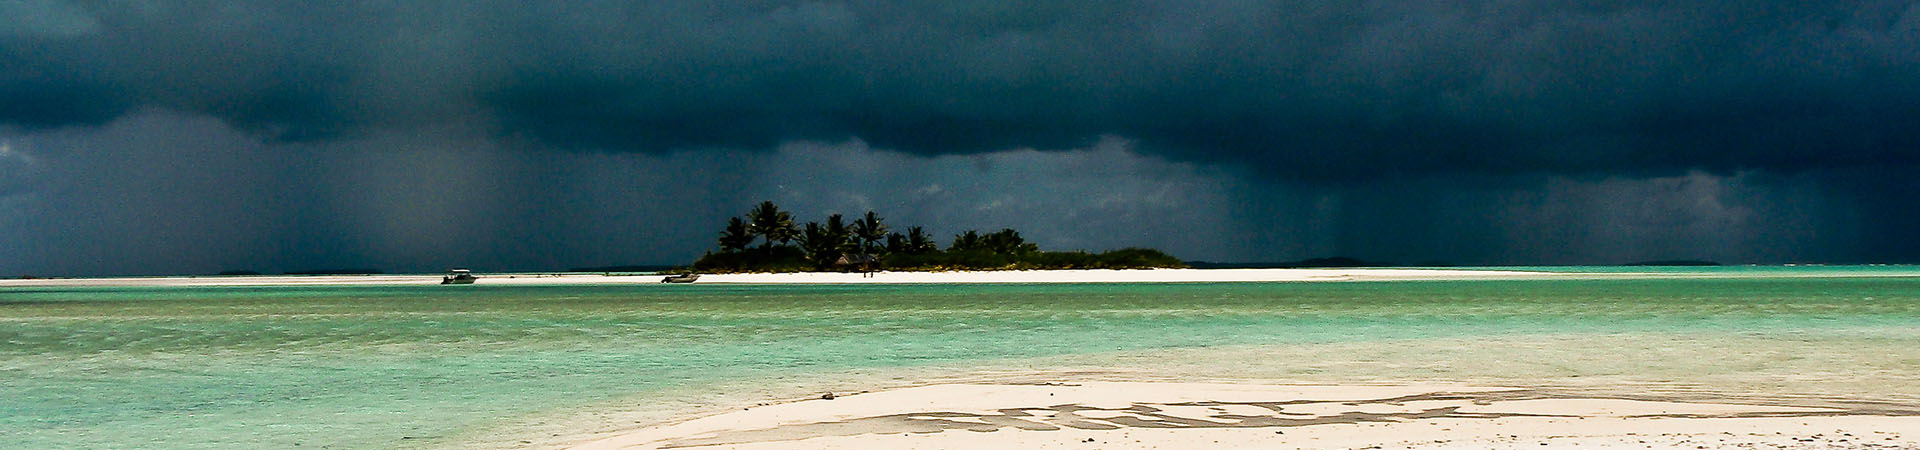 Storms in Cook Islands